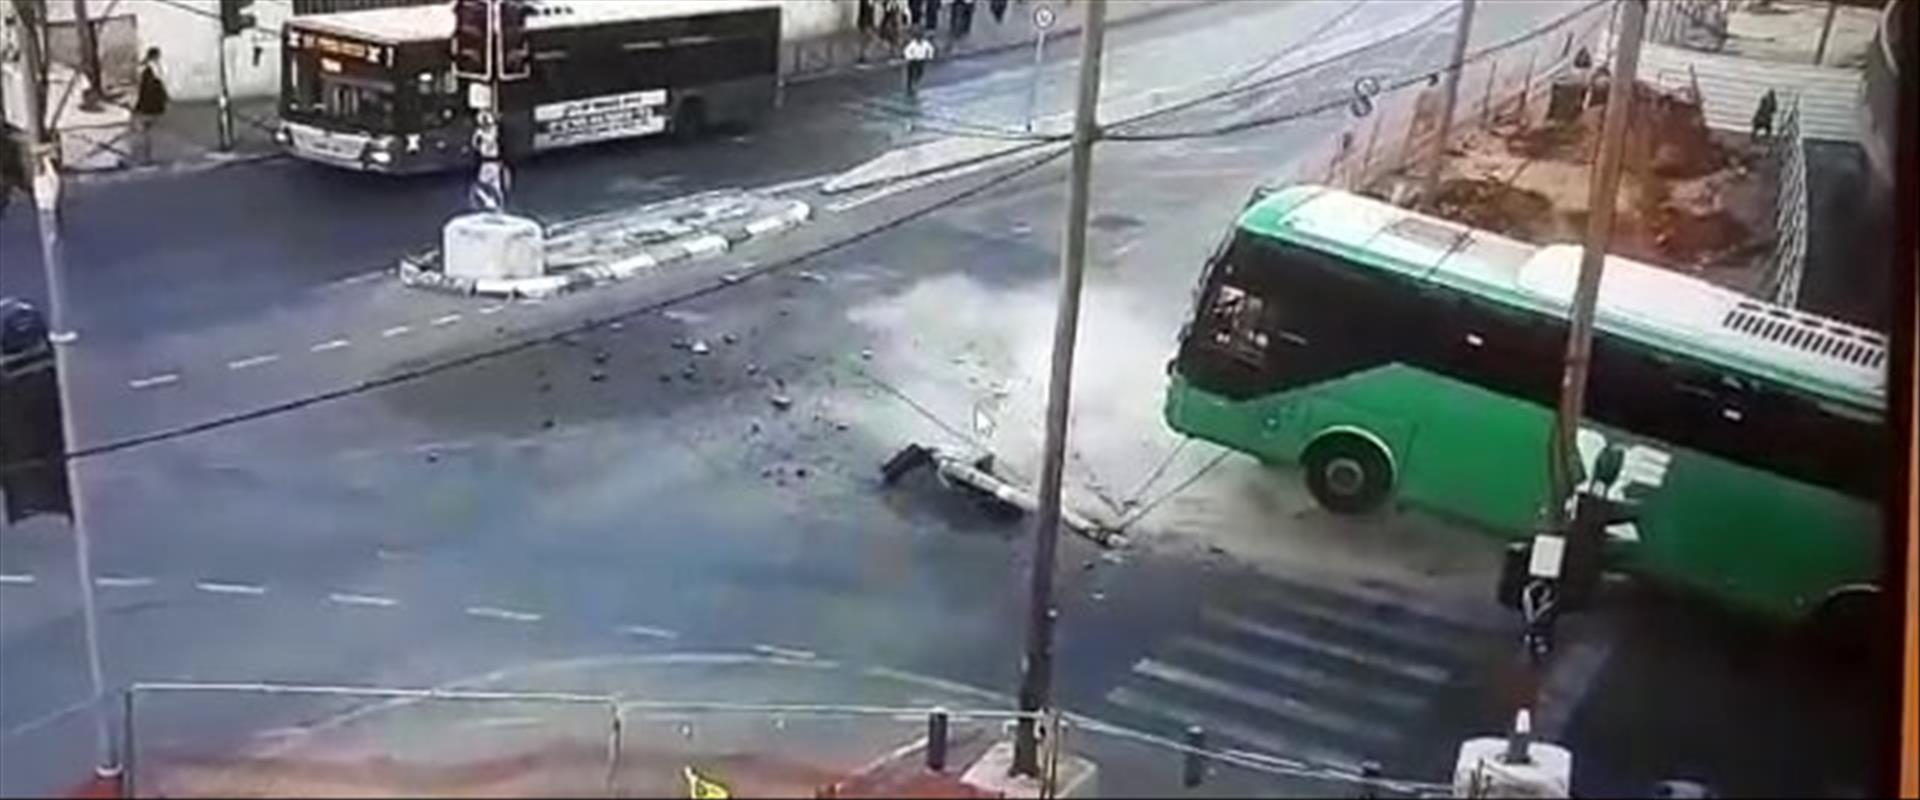 התאונה בירושלים